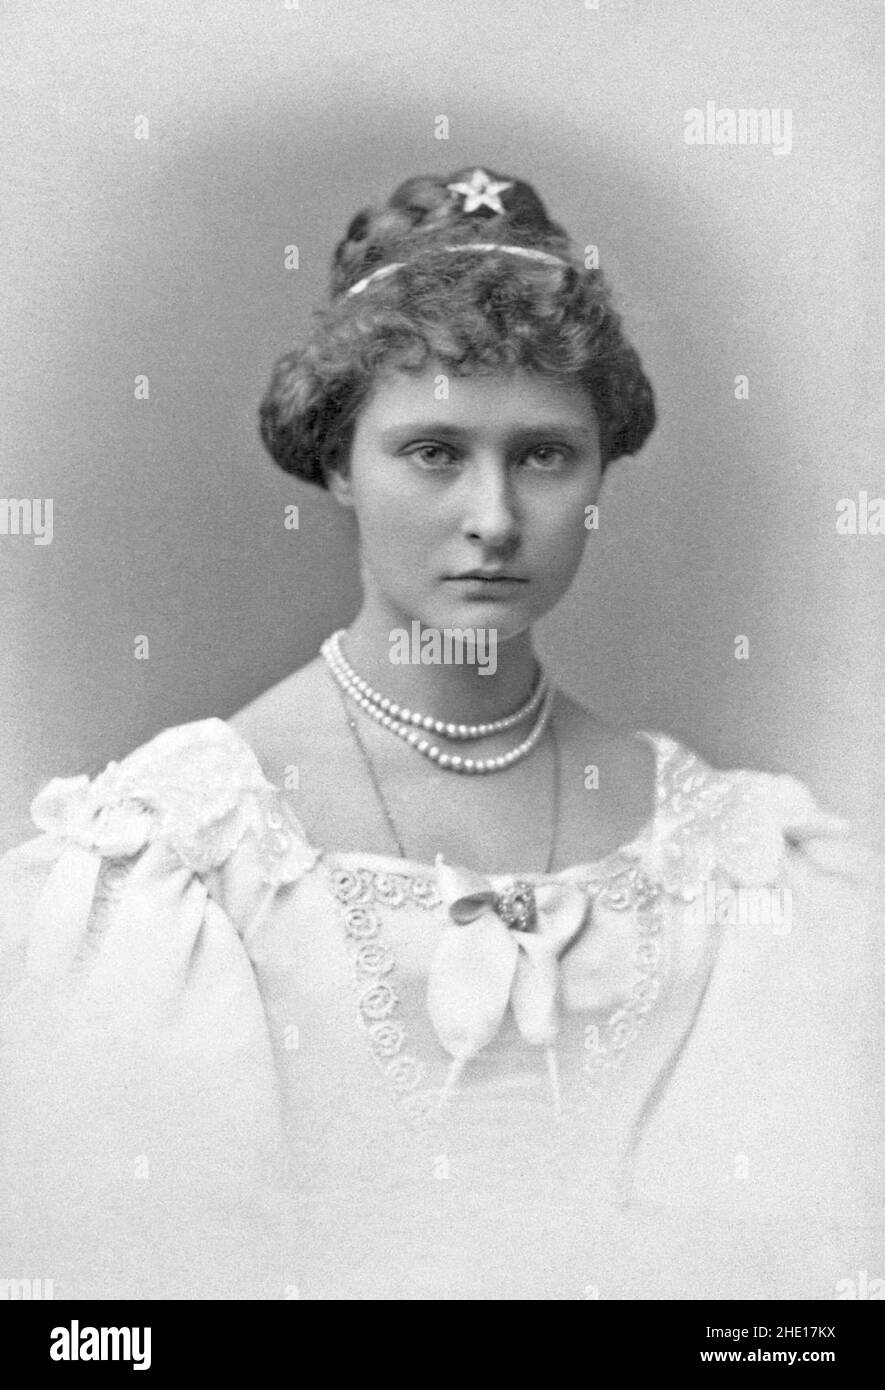 Die Ehefrau des russischen Zaren Nikolaus II., Tsaritsa Alexandra Fjodorowna (Alix von Hessen), 15 Jahre alt. Stockfoto